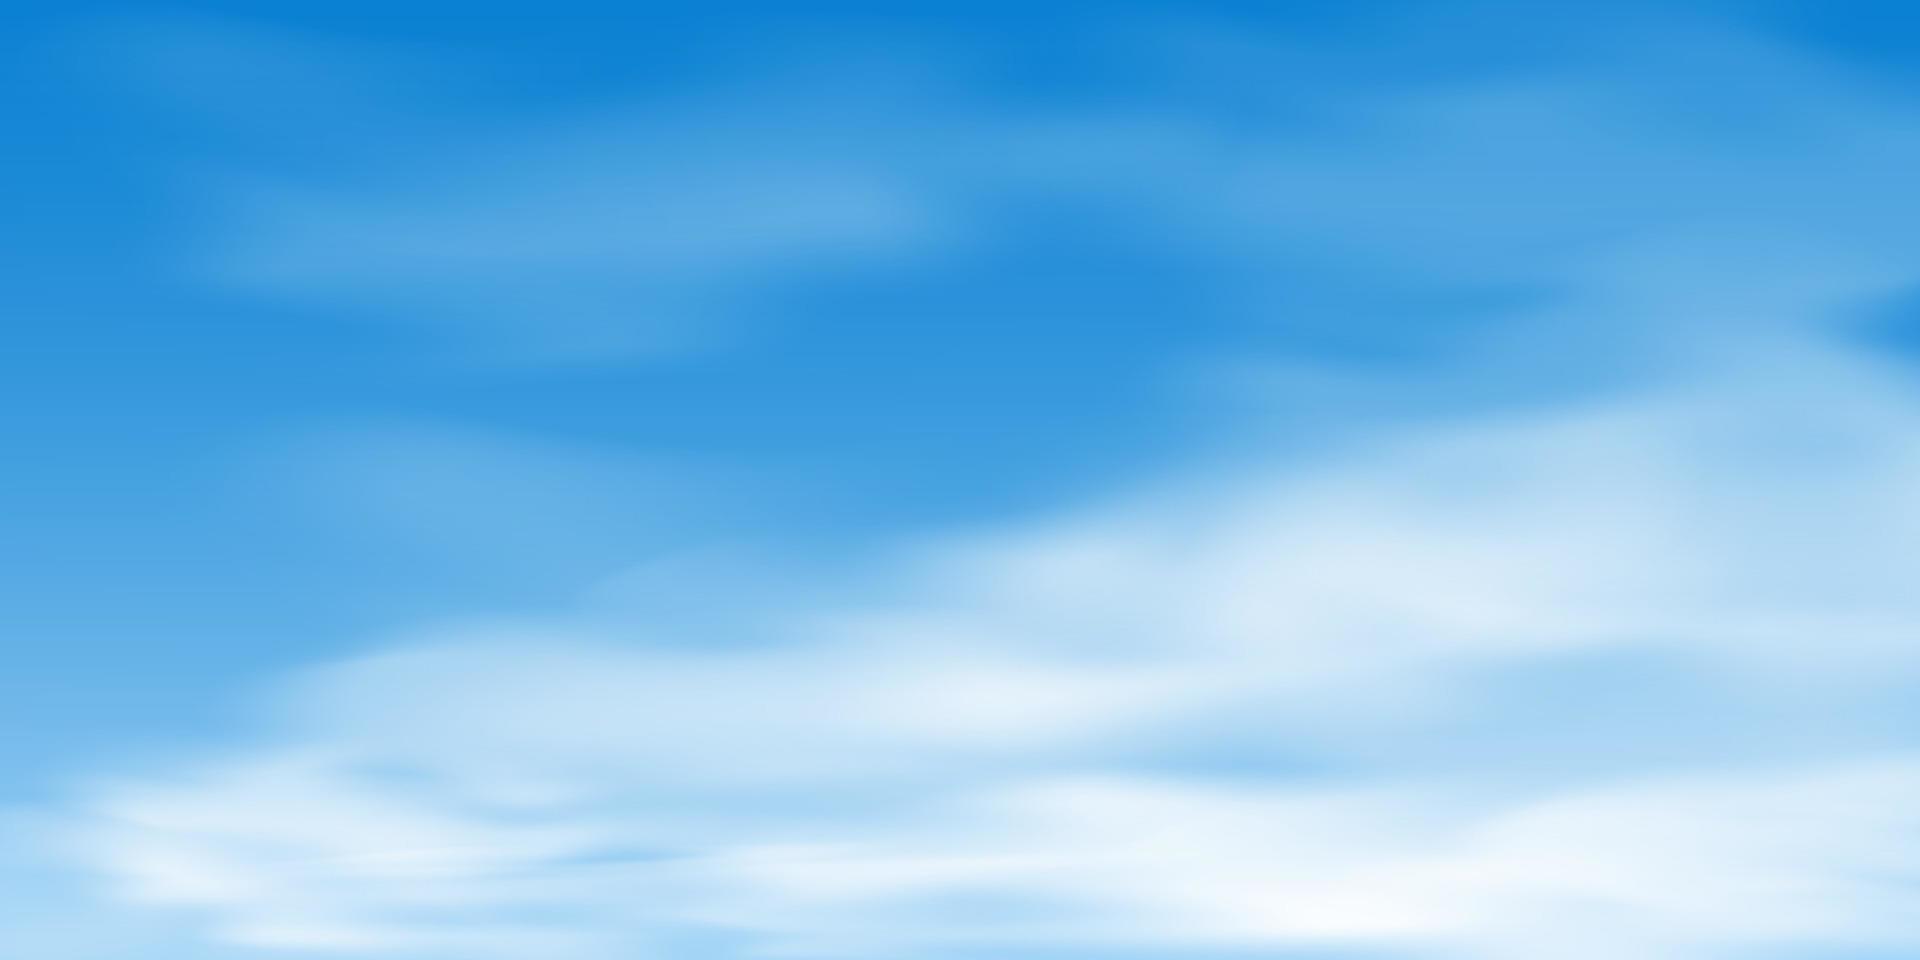 Hintergrund des blauen Himmels und weiße Wolken vektor